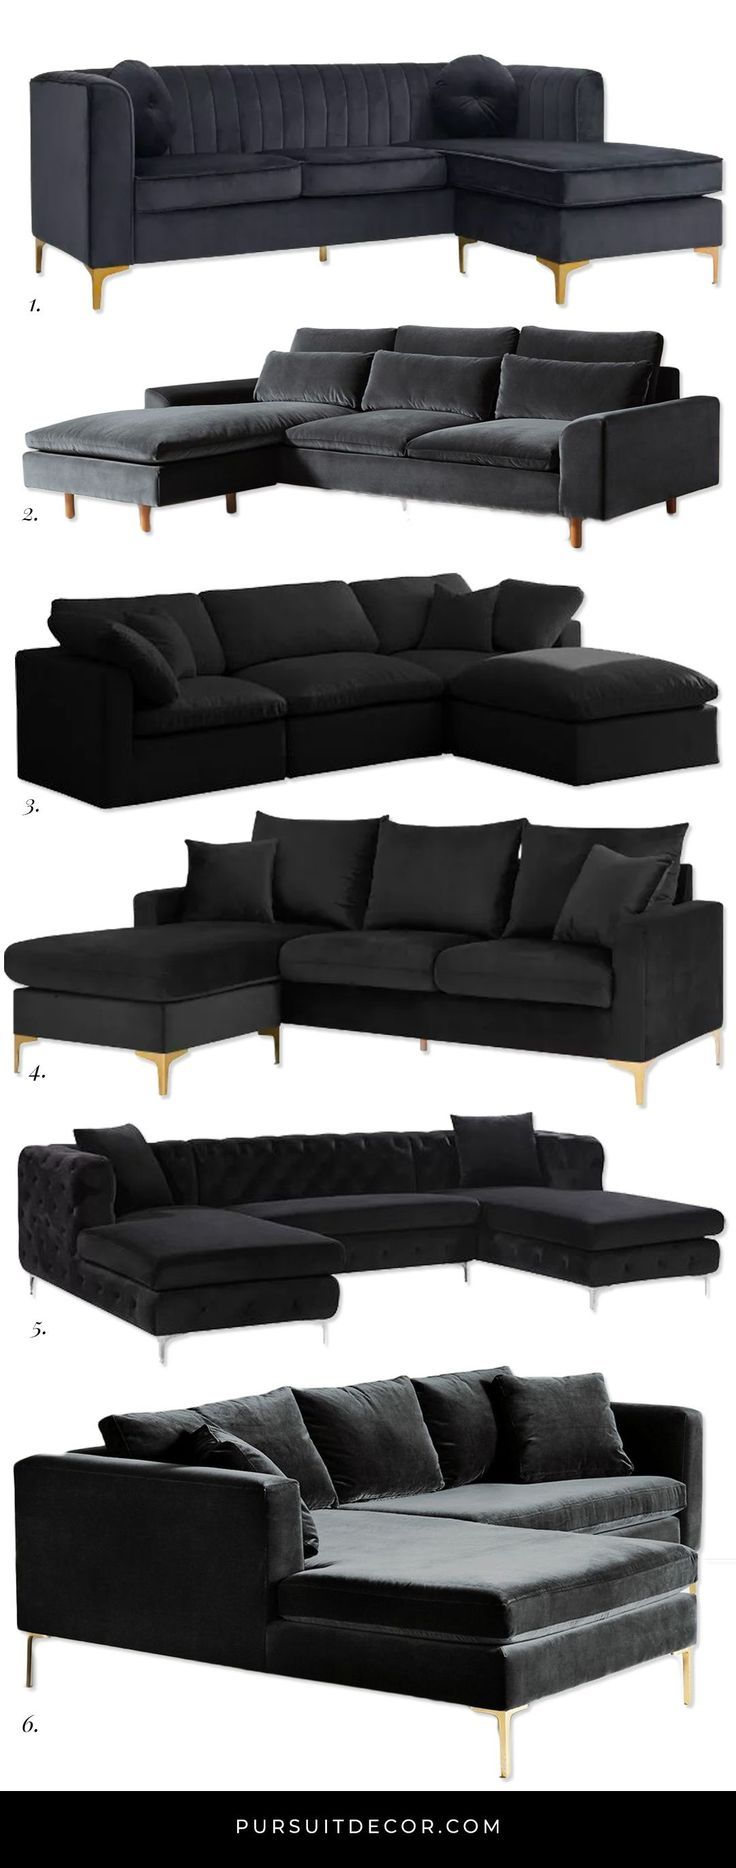 6 Luxurious Black Velvet Sectional Sofas You'Ll Love – Pursuit Decor | Black  Sofa Living Room, Modern Black Couch, Black Sofa Living Room Decor With Black Velvet Sofas (View 15 of 15)